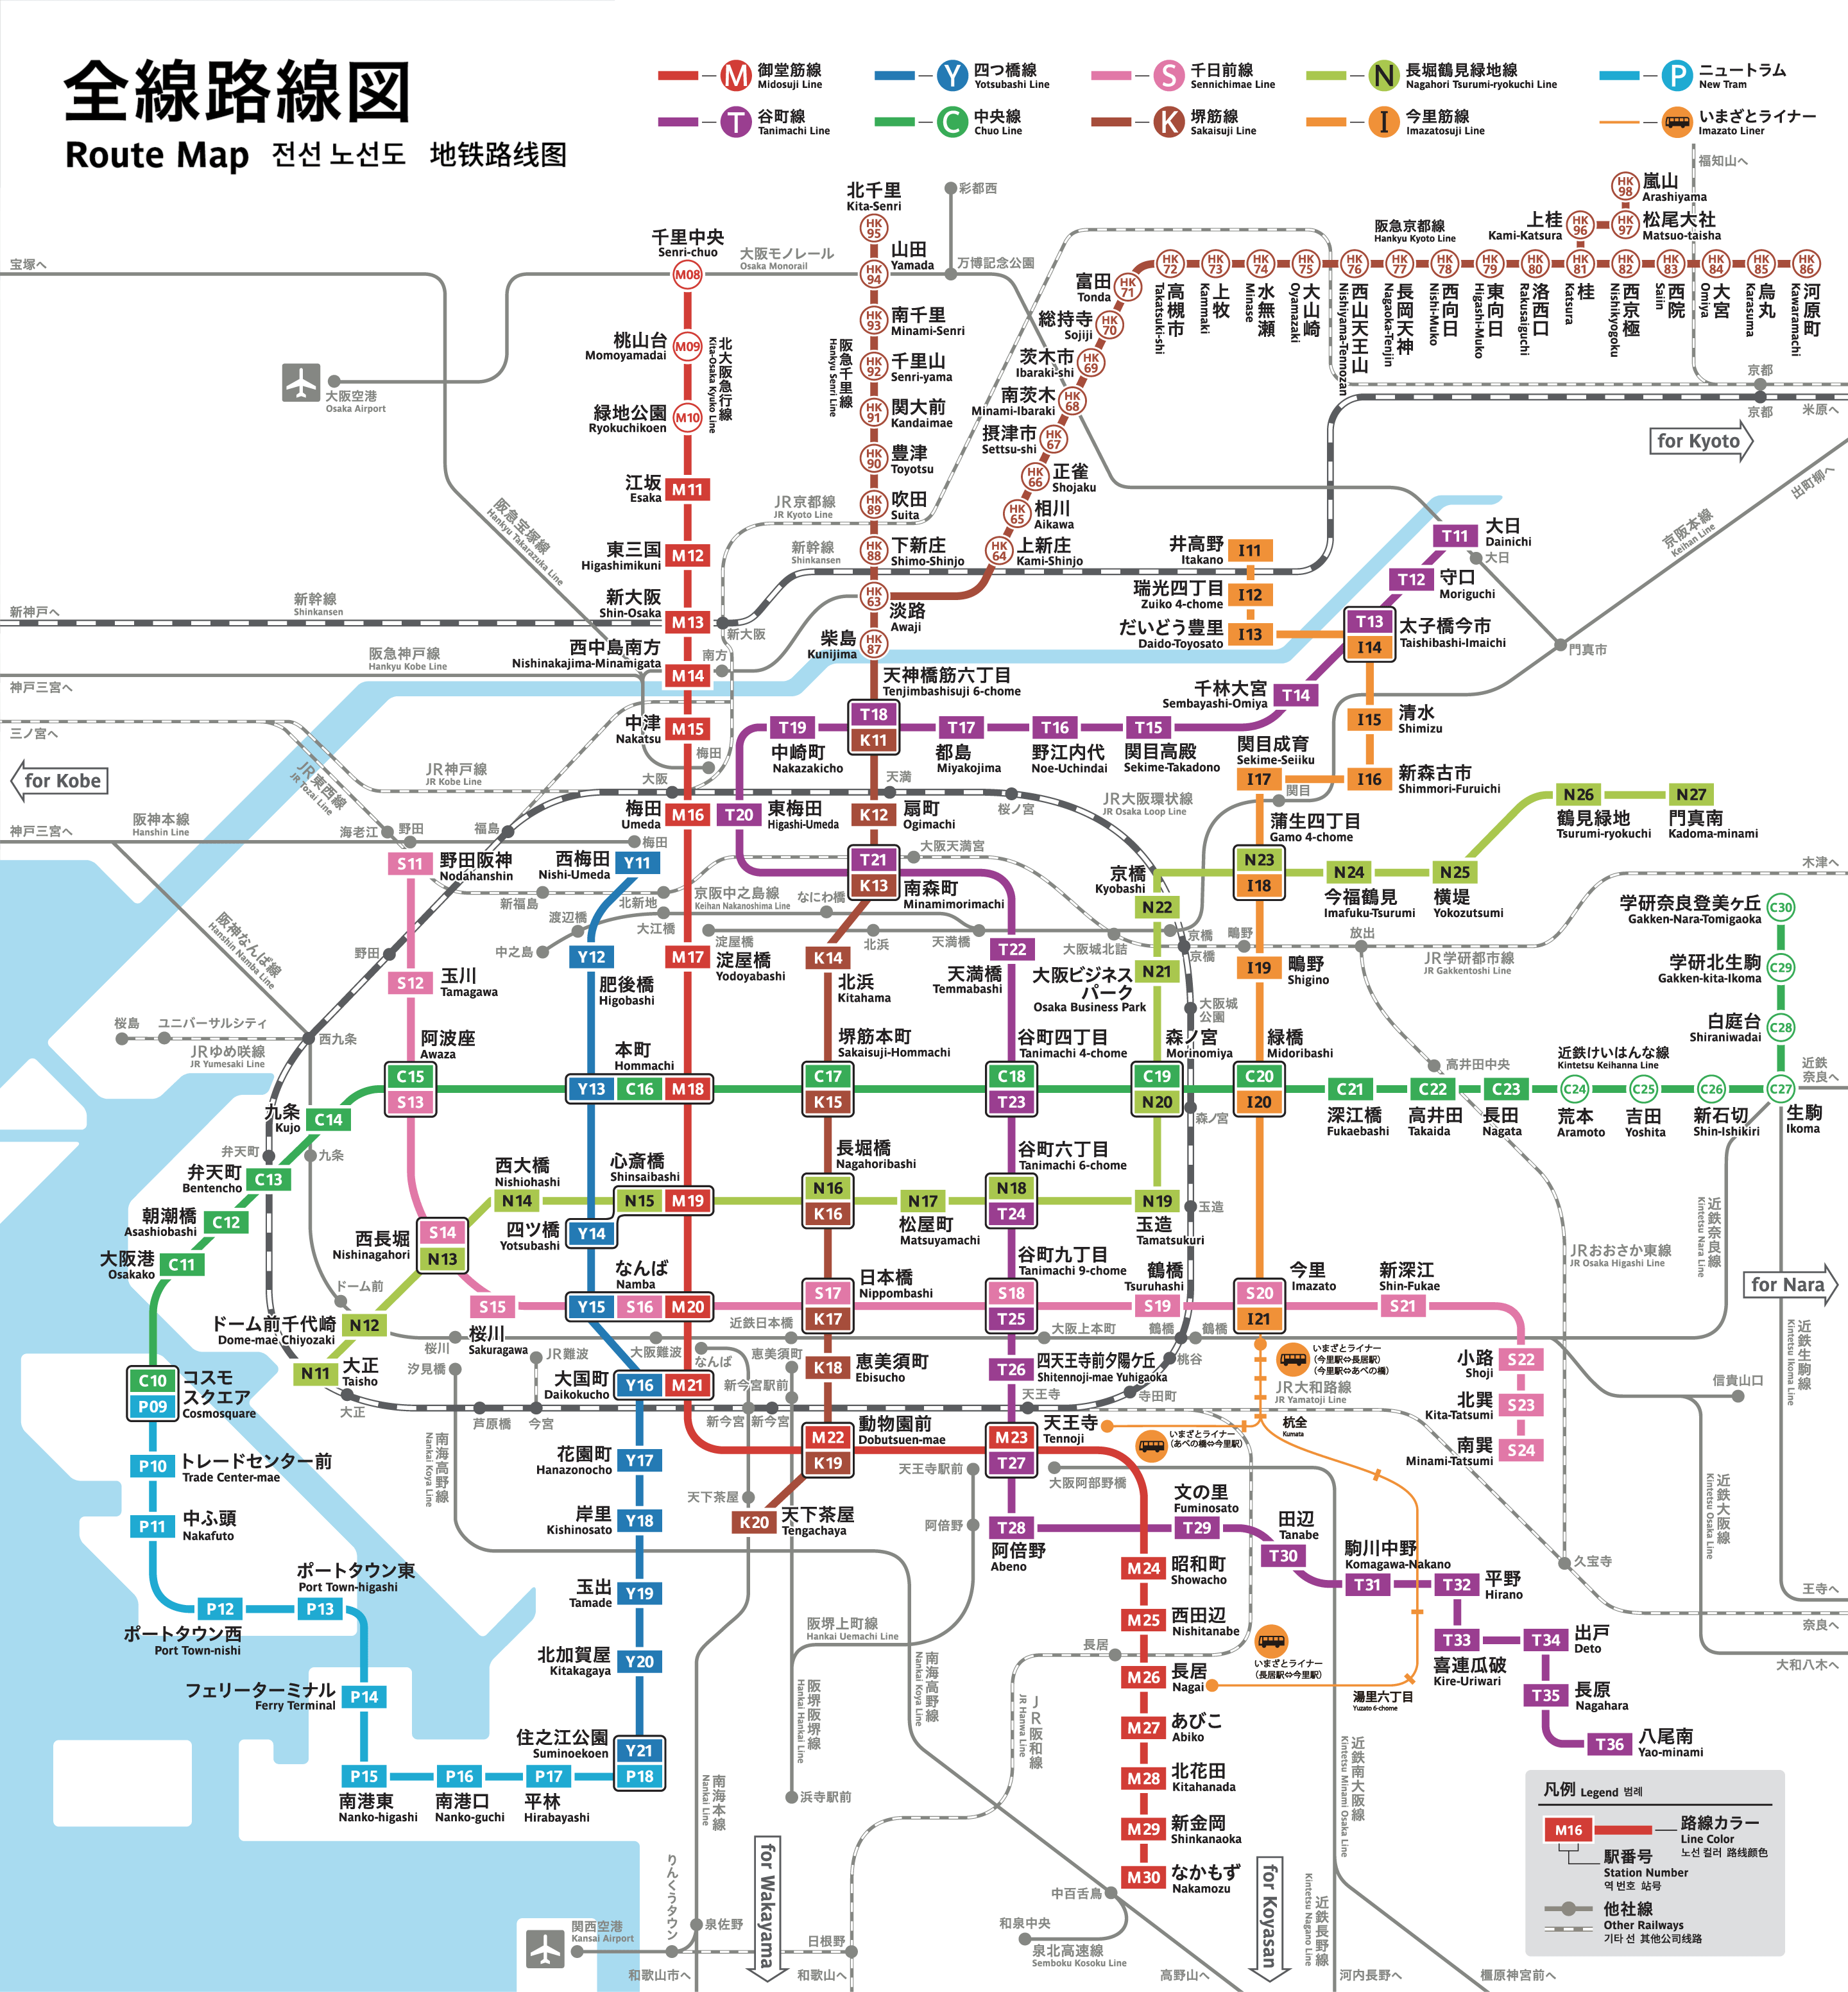 【大阪自由行攻略】大阪地鐵巴士一日券 最新票價、購買地點、使用教學、門票優惠